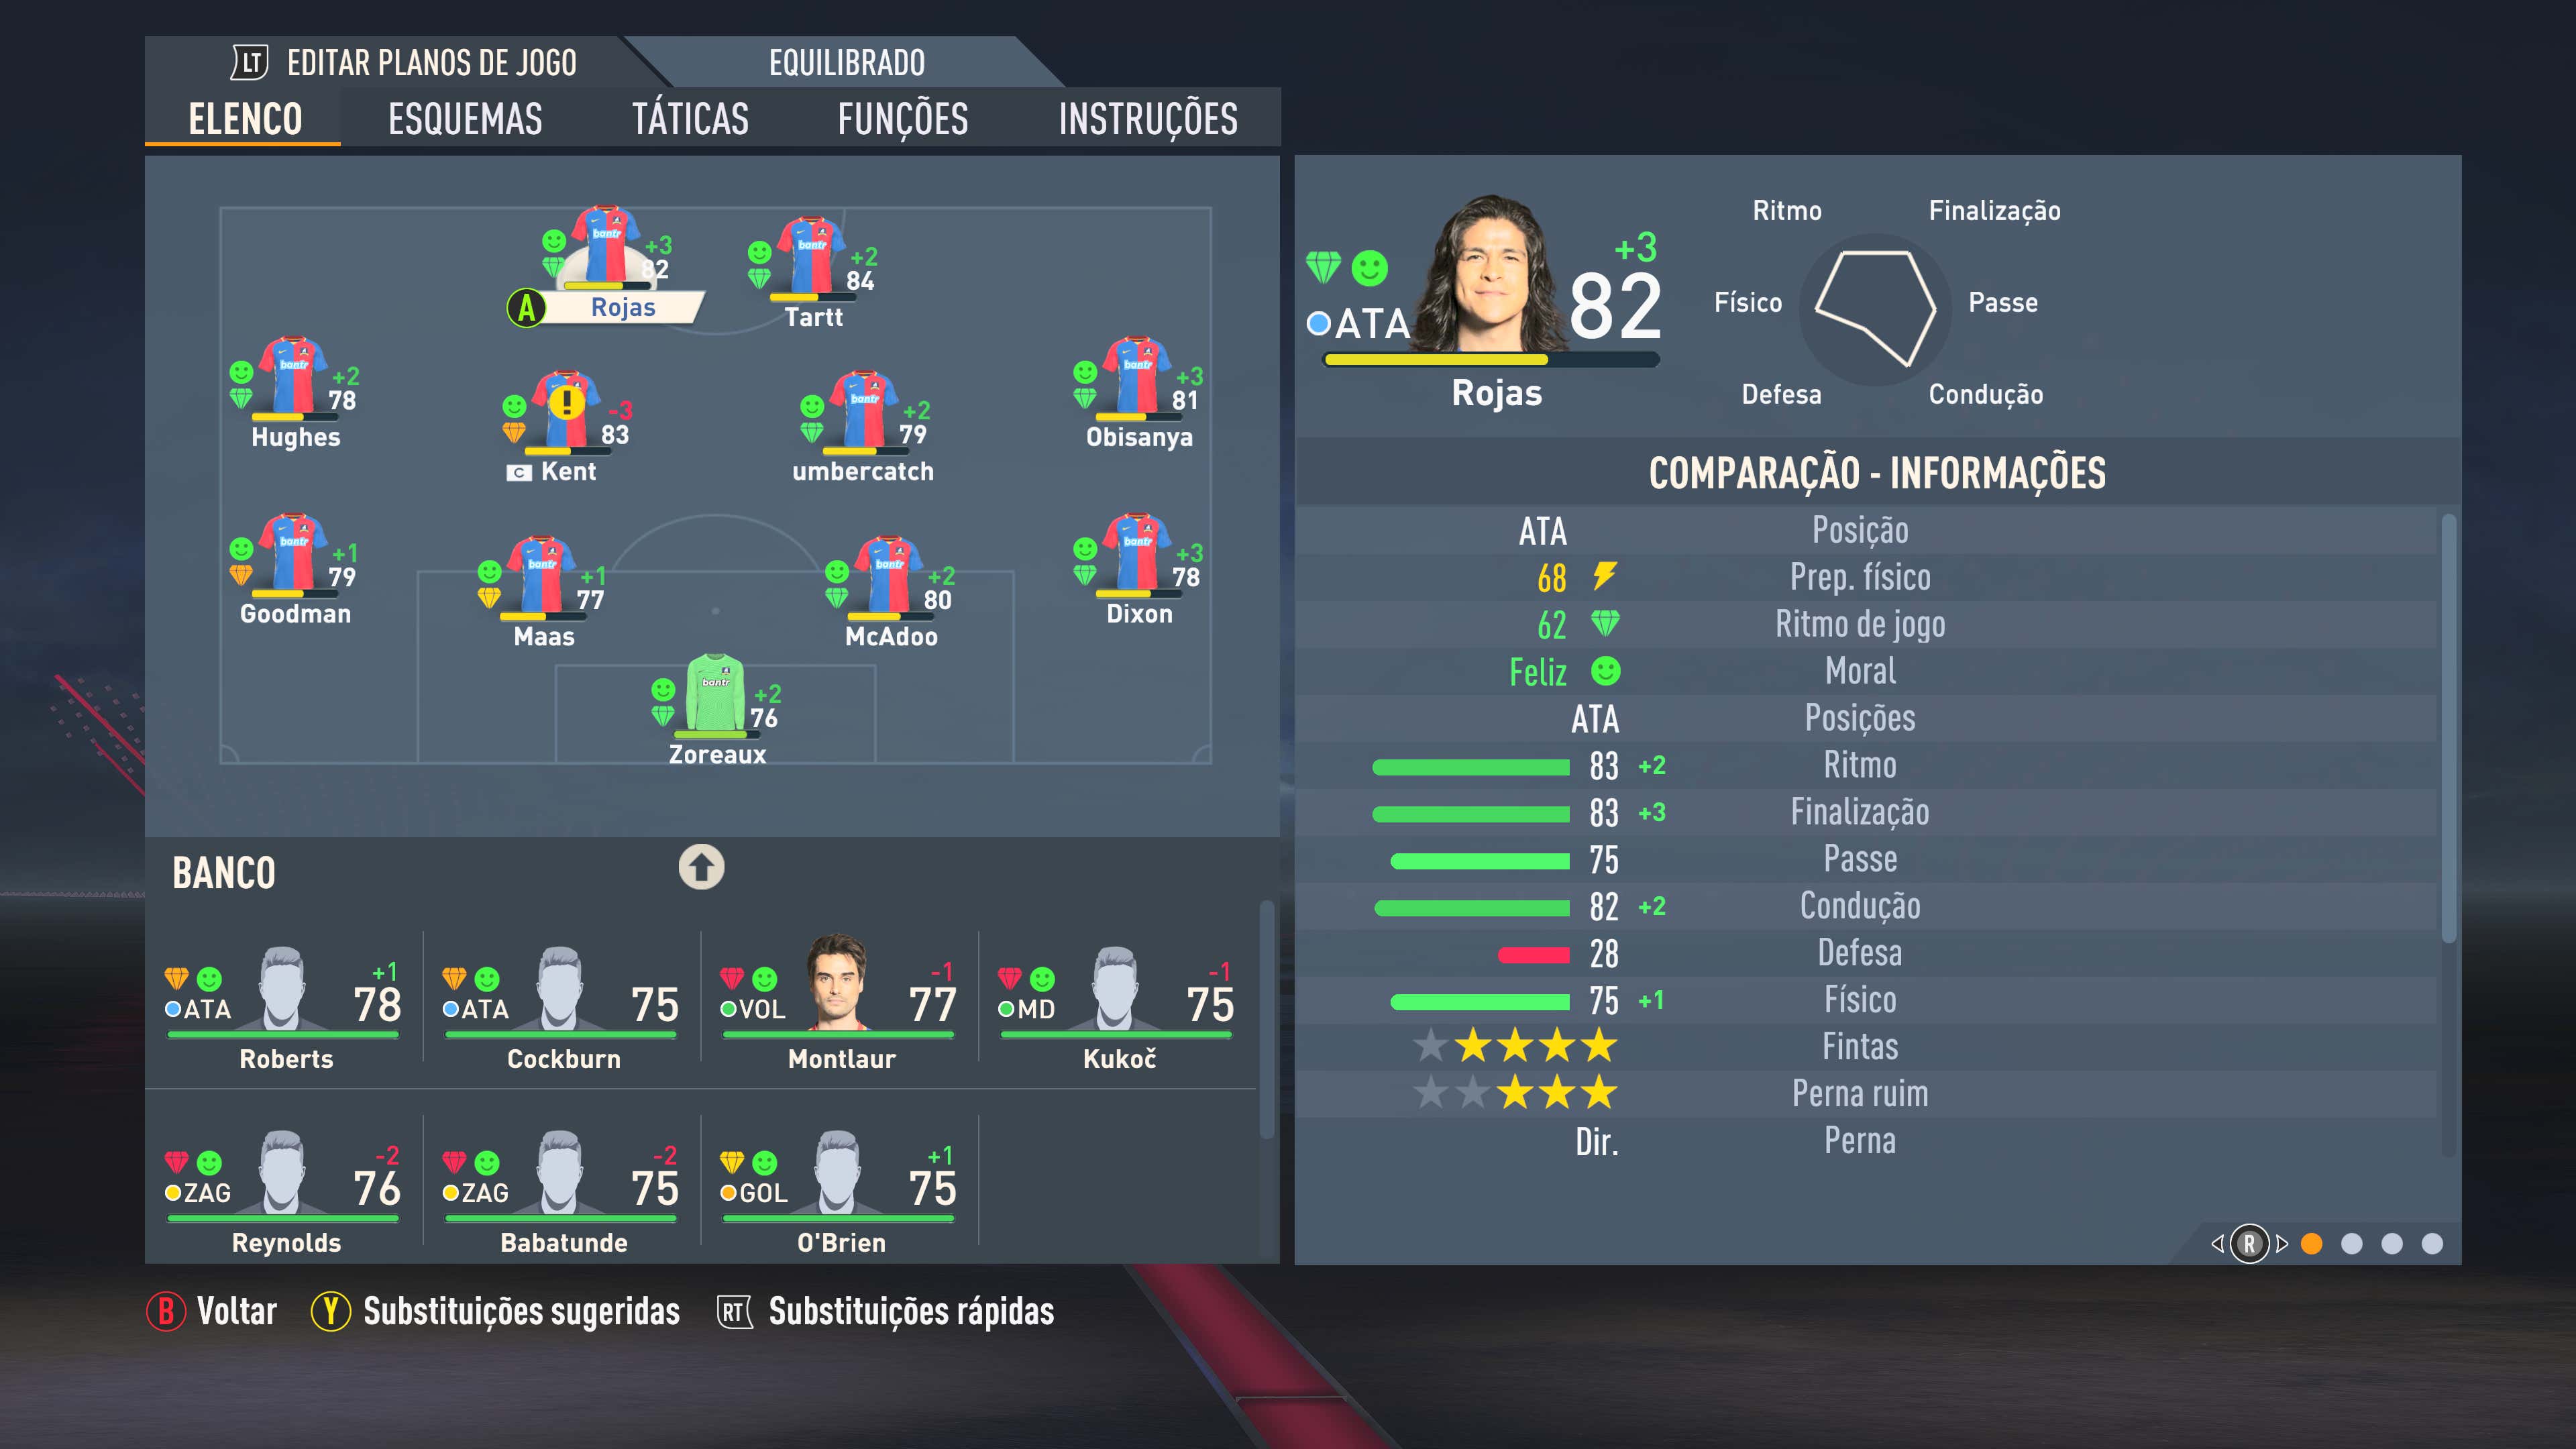 FIFA 23: Quais as melhores promessas em cada posição?